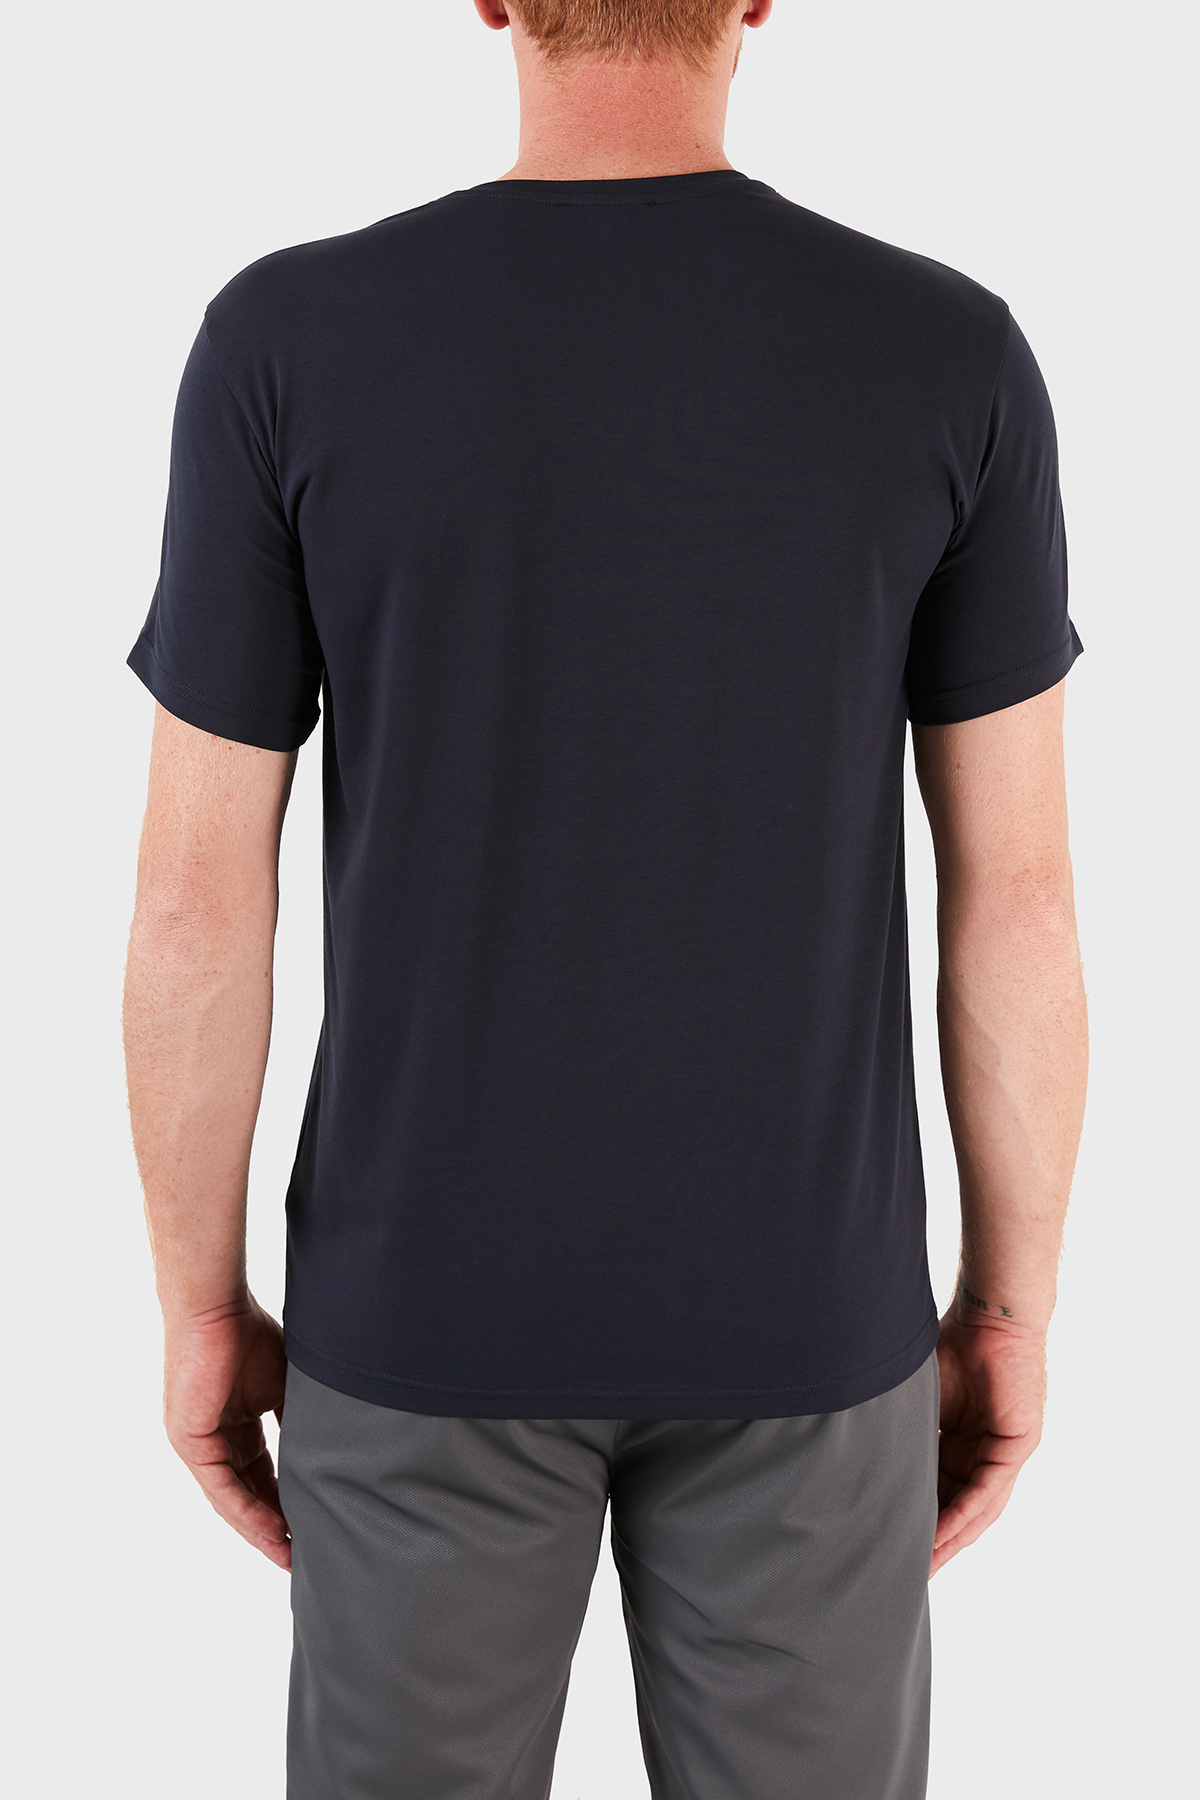 Emporio Armani Logo Baskılı V Yaka Pamuklu Erkek T Shirt S 111556 1P525 00135 LACİVERT